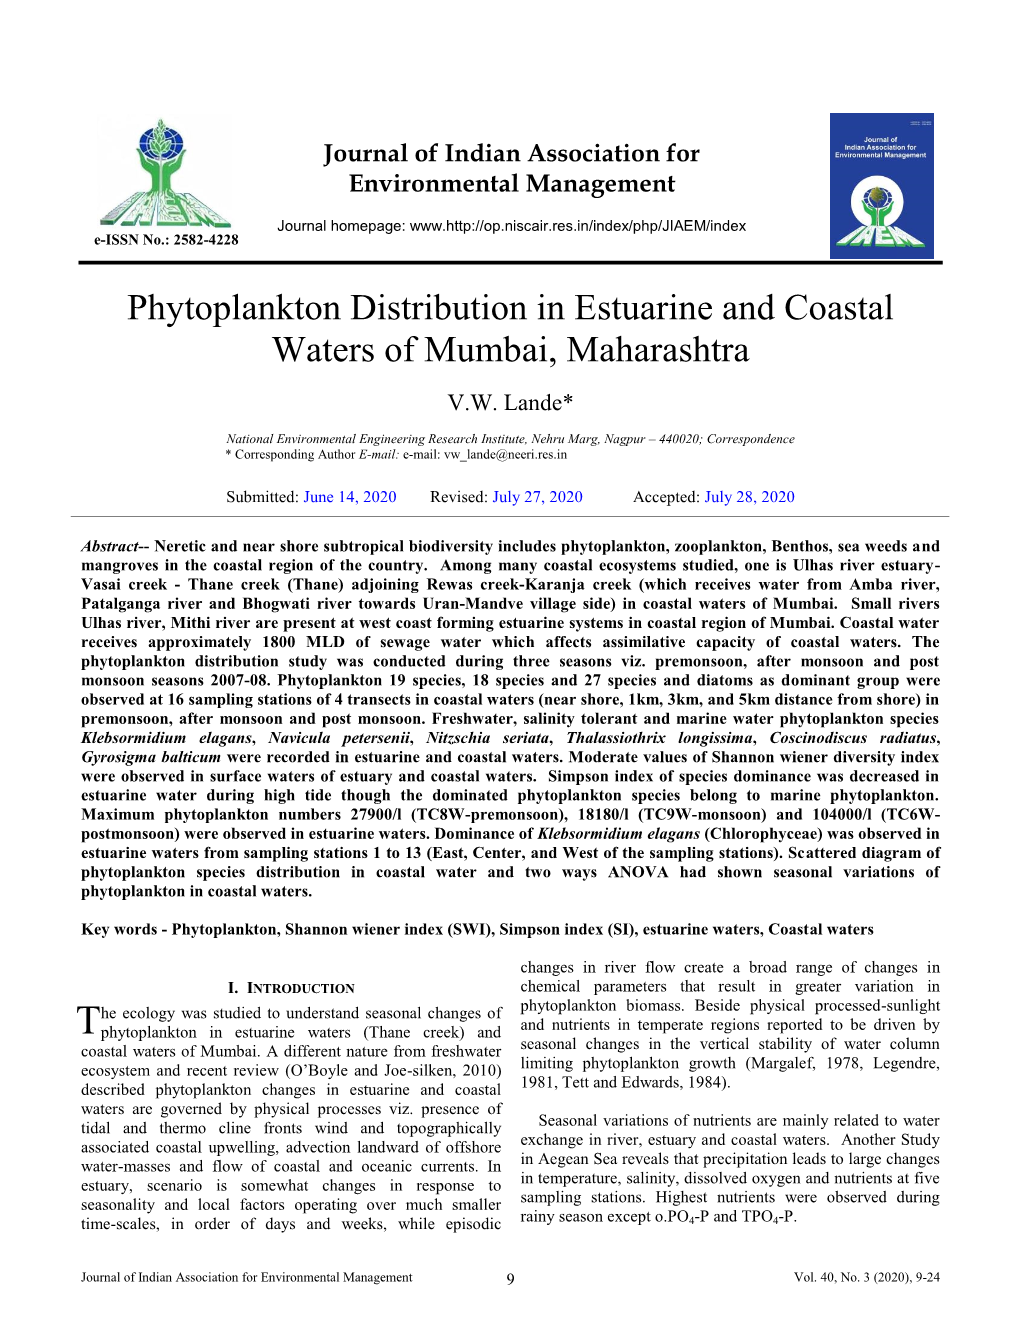 Phytoplankton Distribution in Estuarine and Coastal Waters of Mumbai, Maharashtra